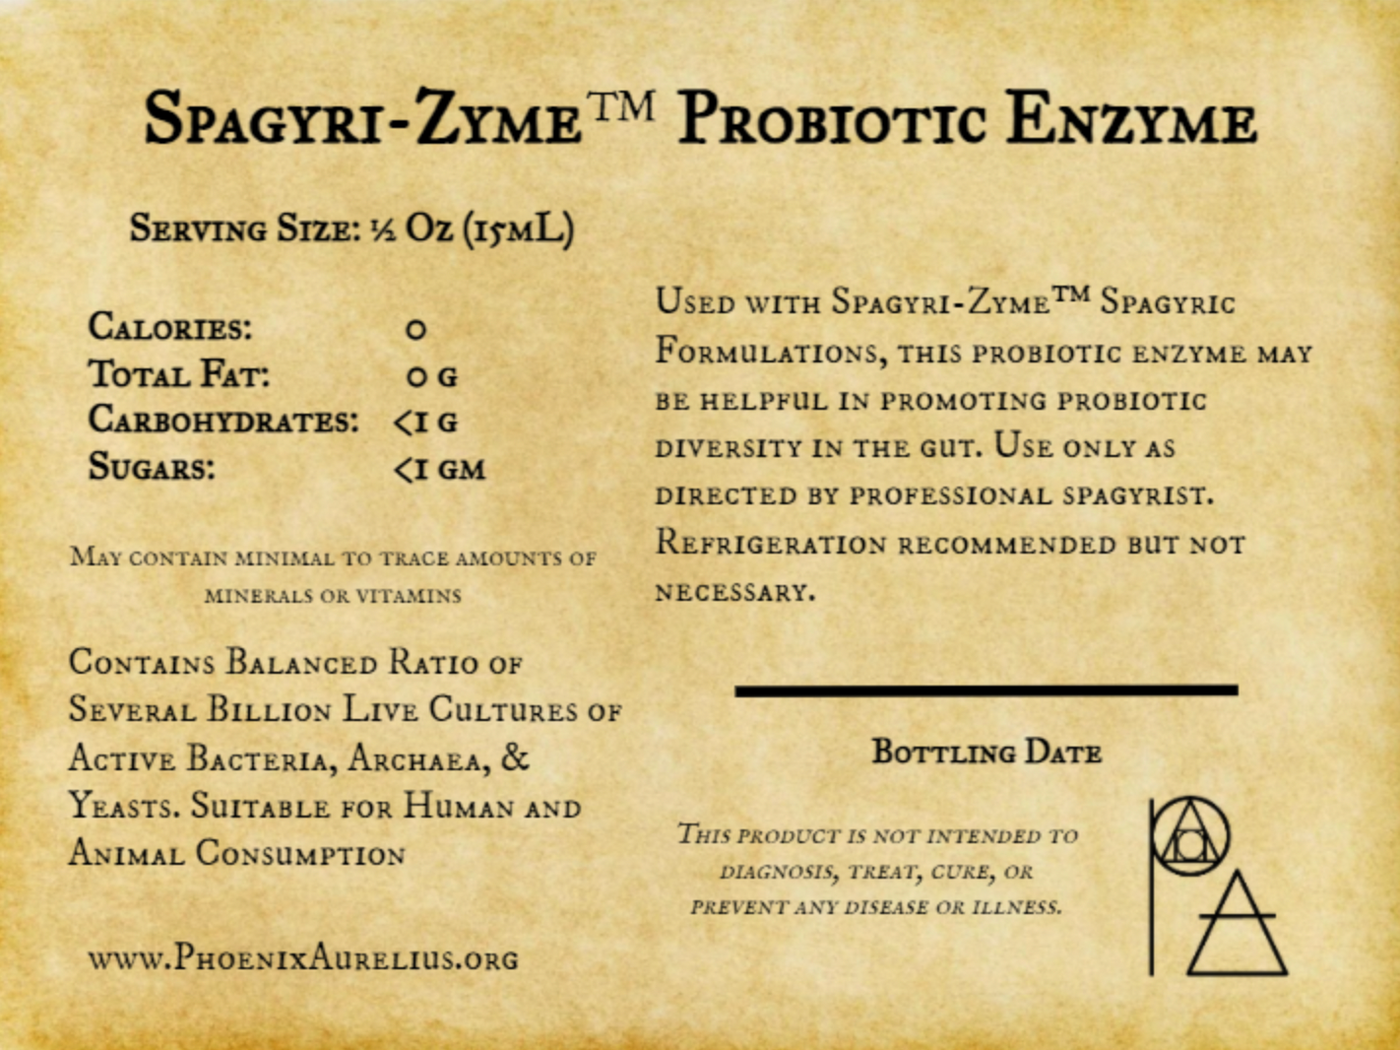 Spagyri-Zyme Probiotic Enzyme